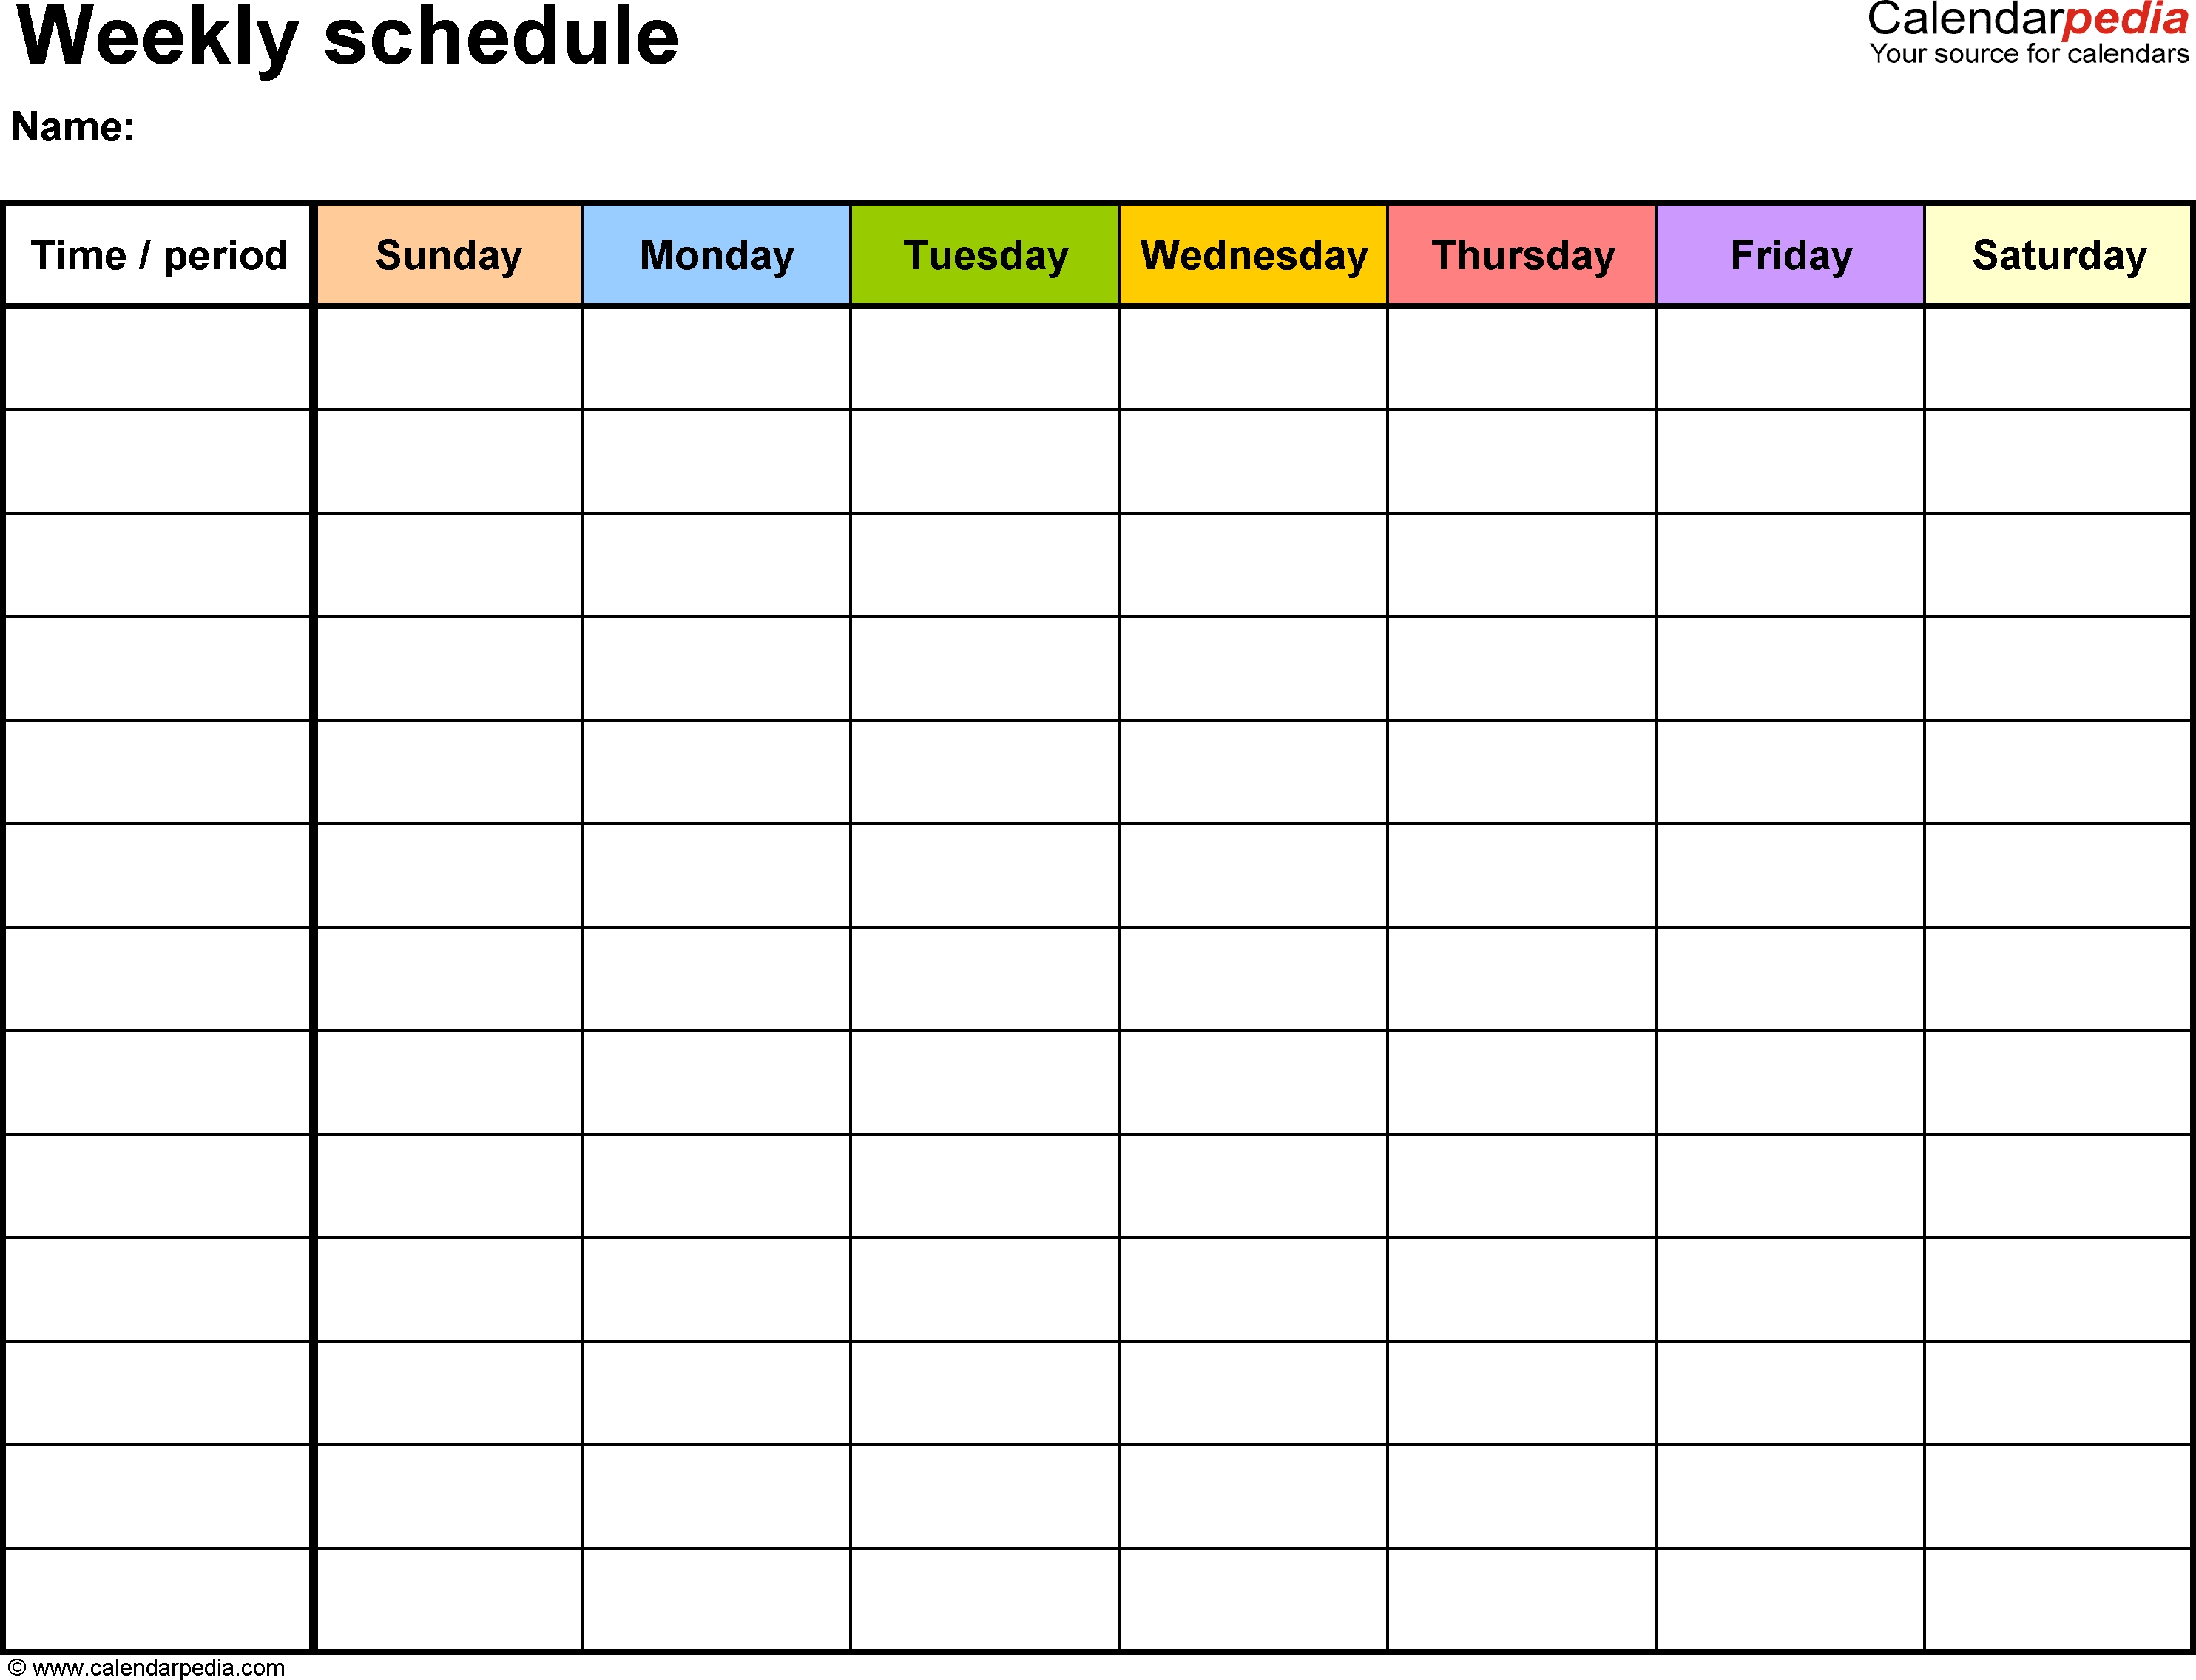 Weekly Schedule Template For Word Version 13: Landscape, 1 regarding 1 Week Blank Calendar Free Printable